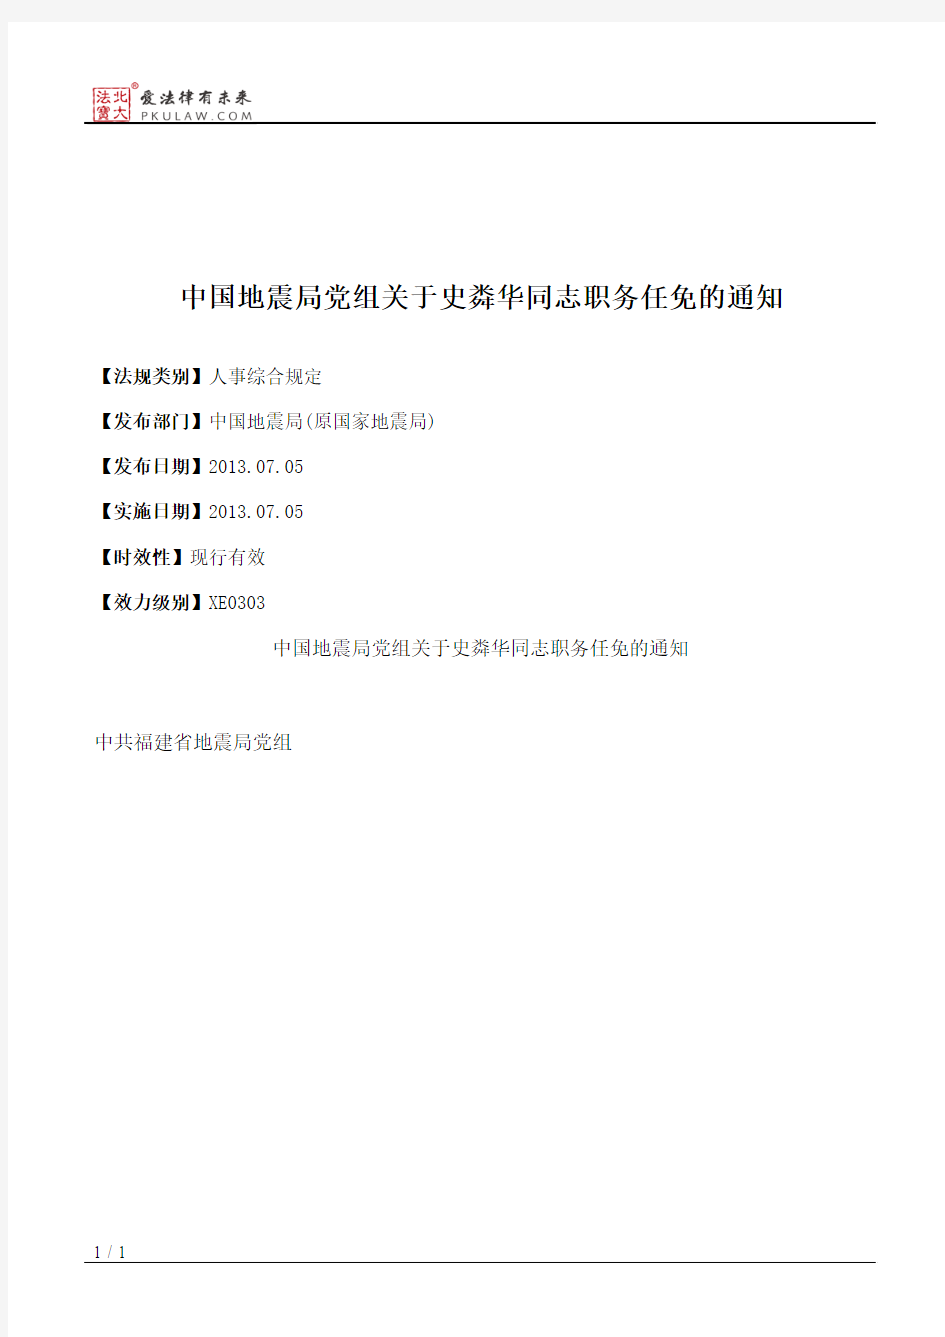 中国地震局党组关于史粦华同志职务任免的通知